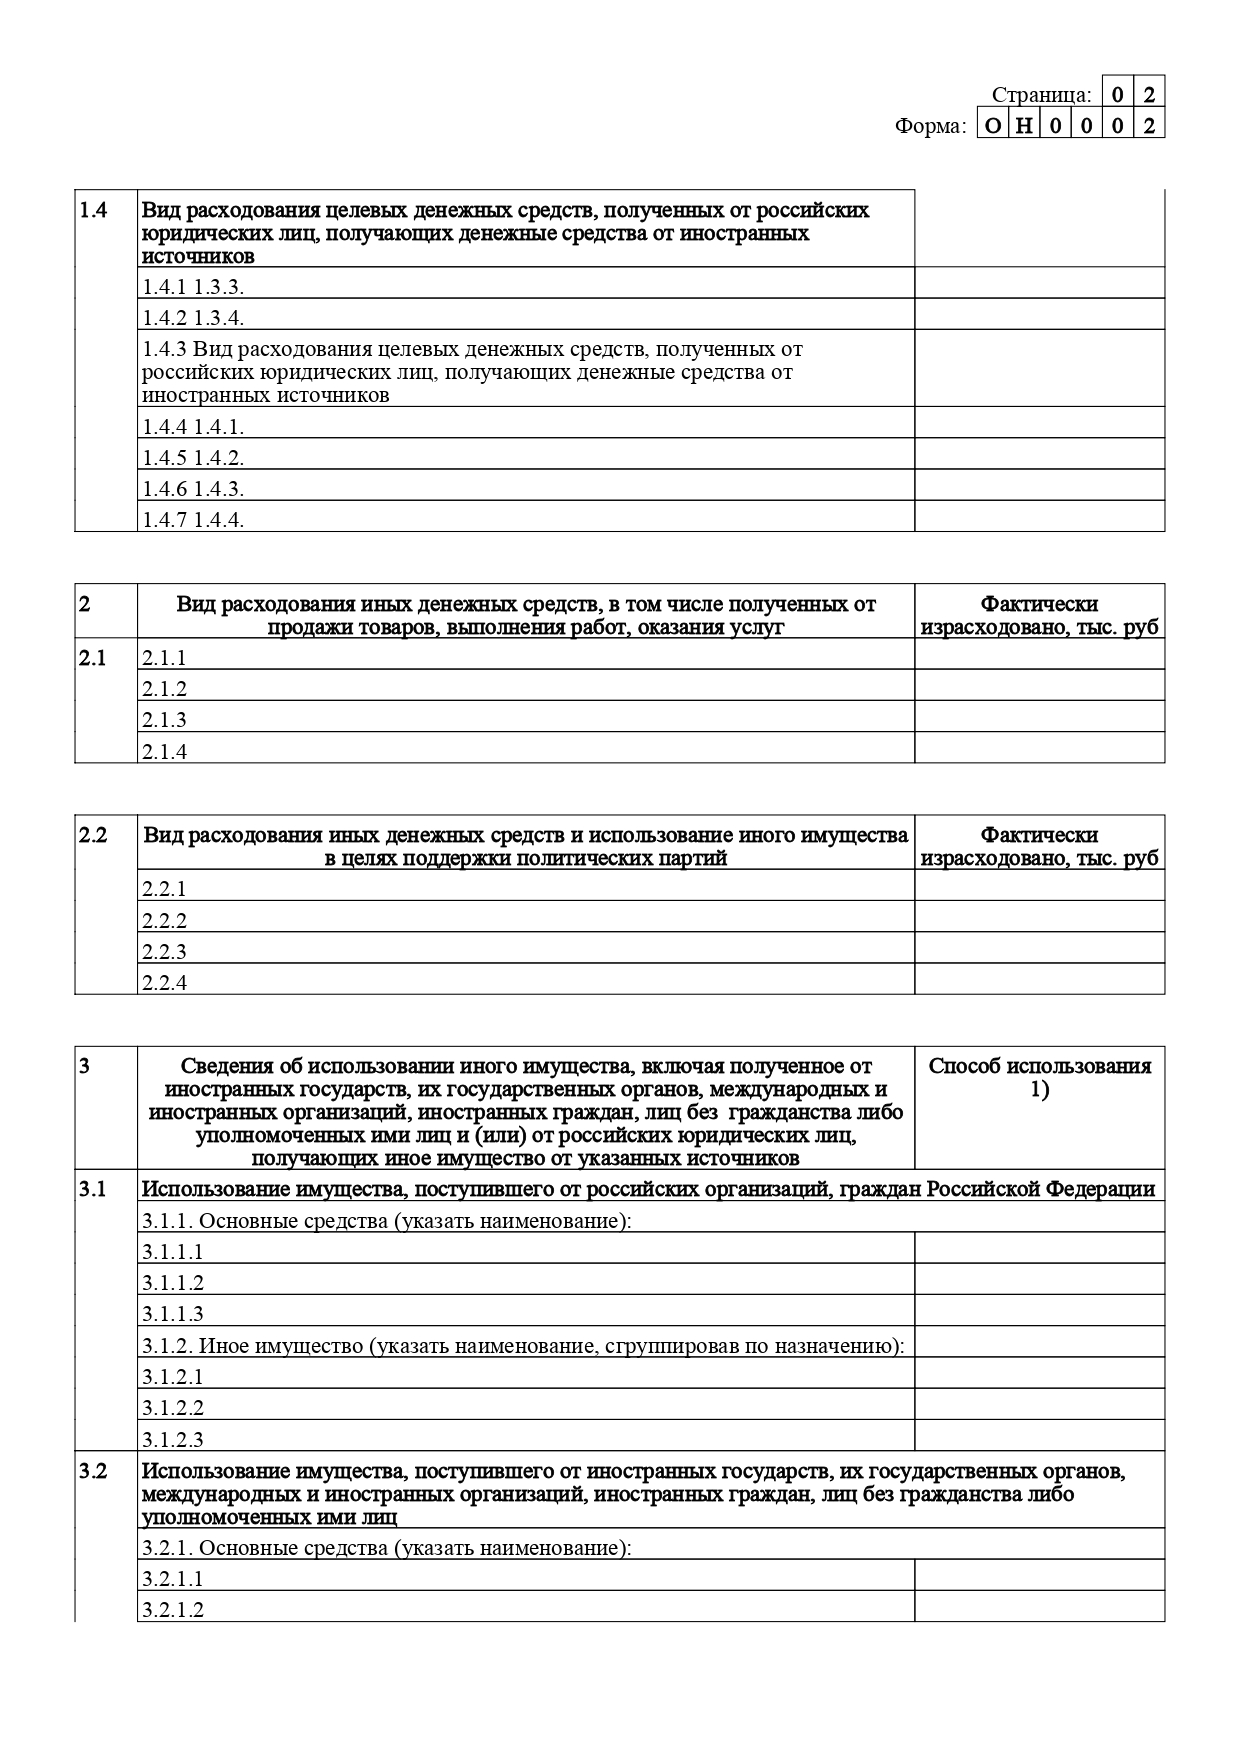 Отчет Севастопольской Коллегии адвокатов 